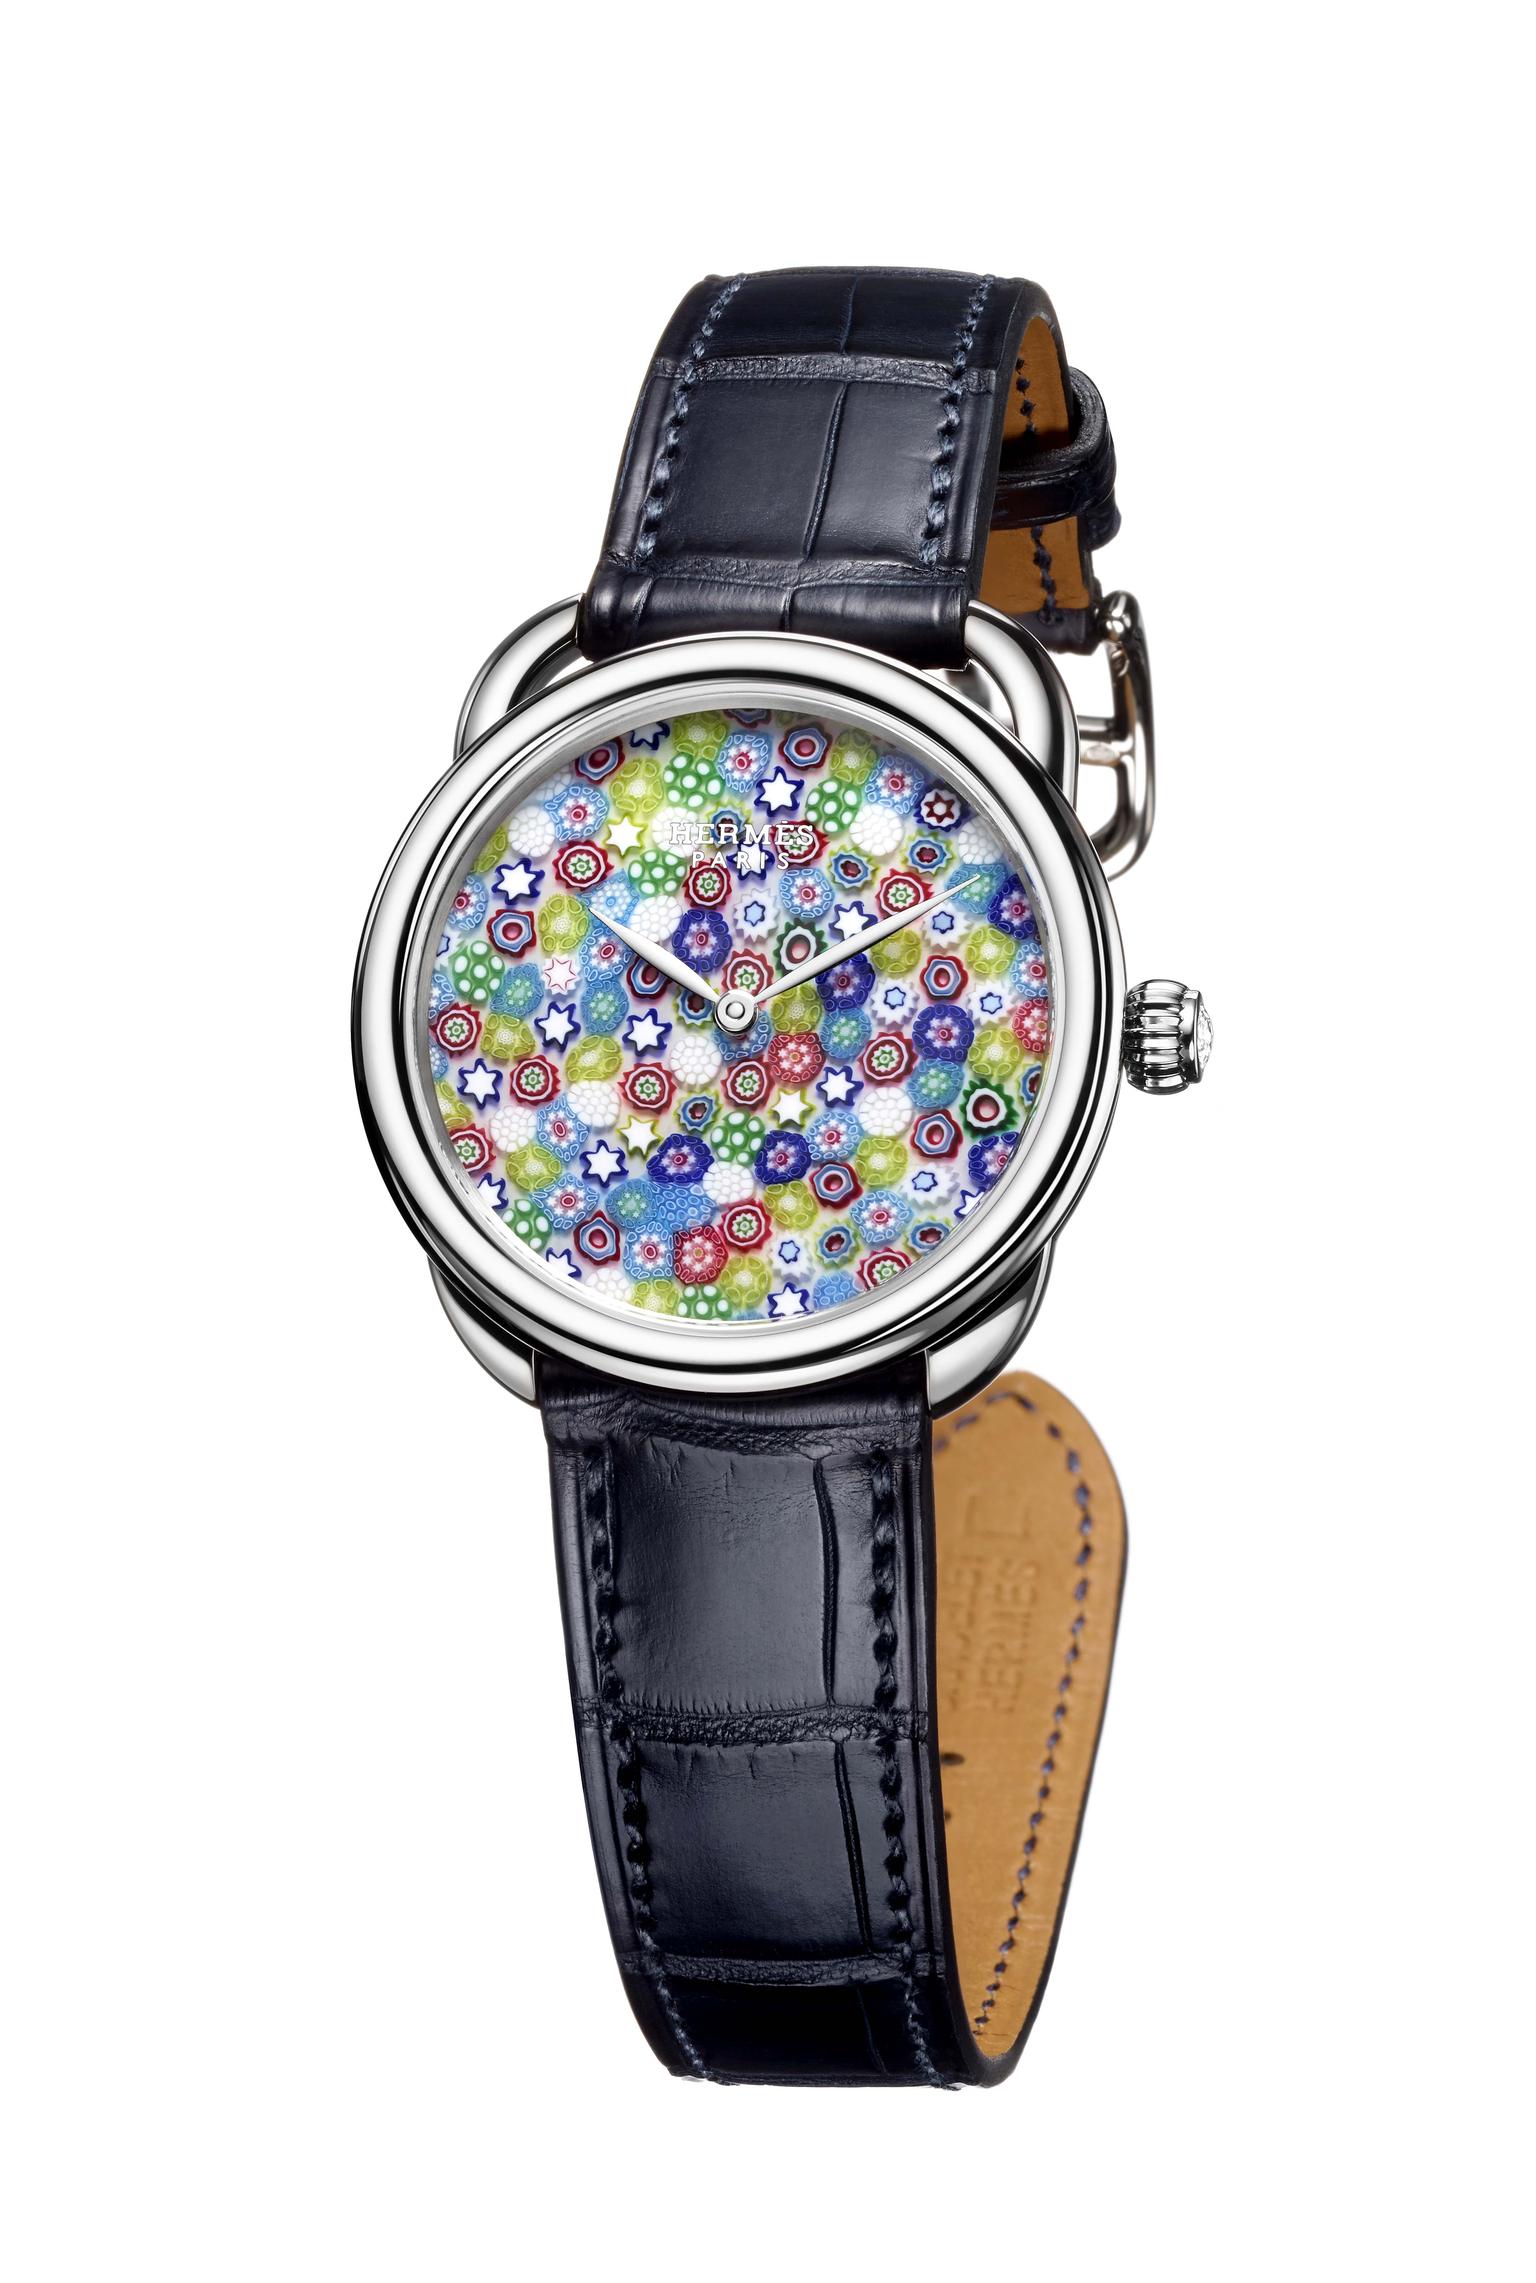 Hermès Arceau Millefiori watch.